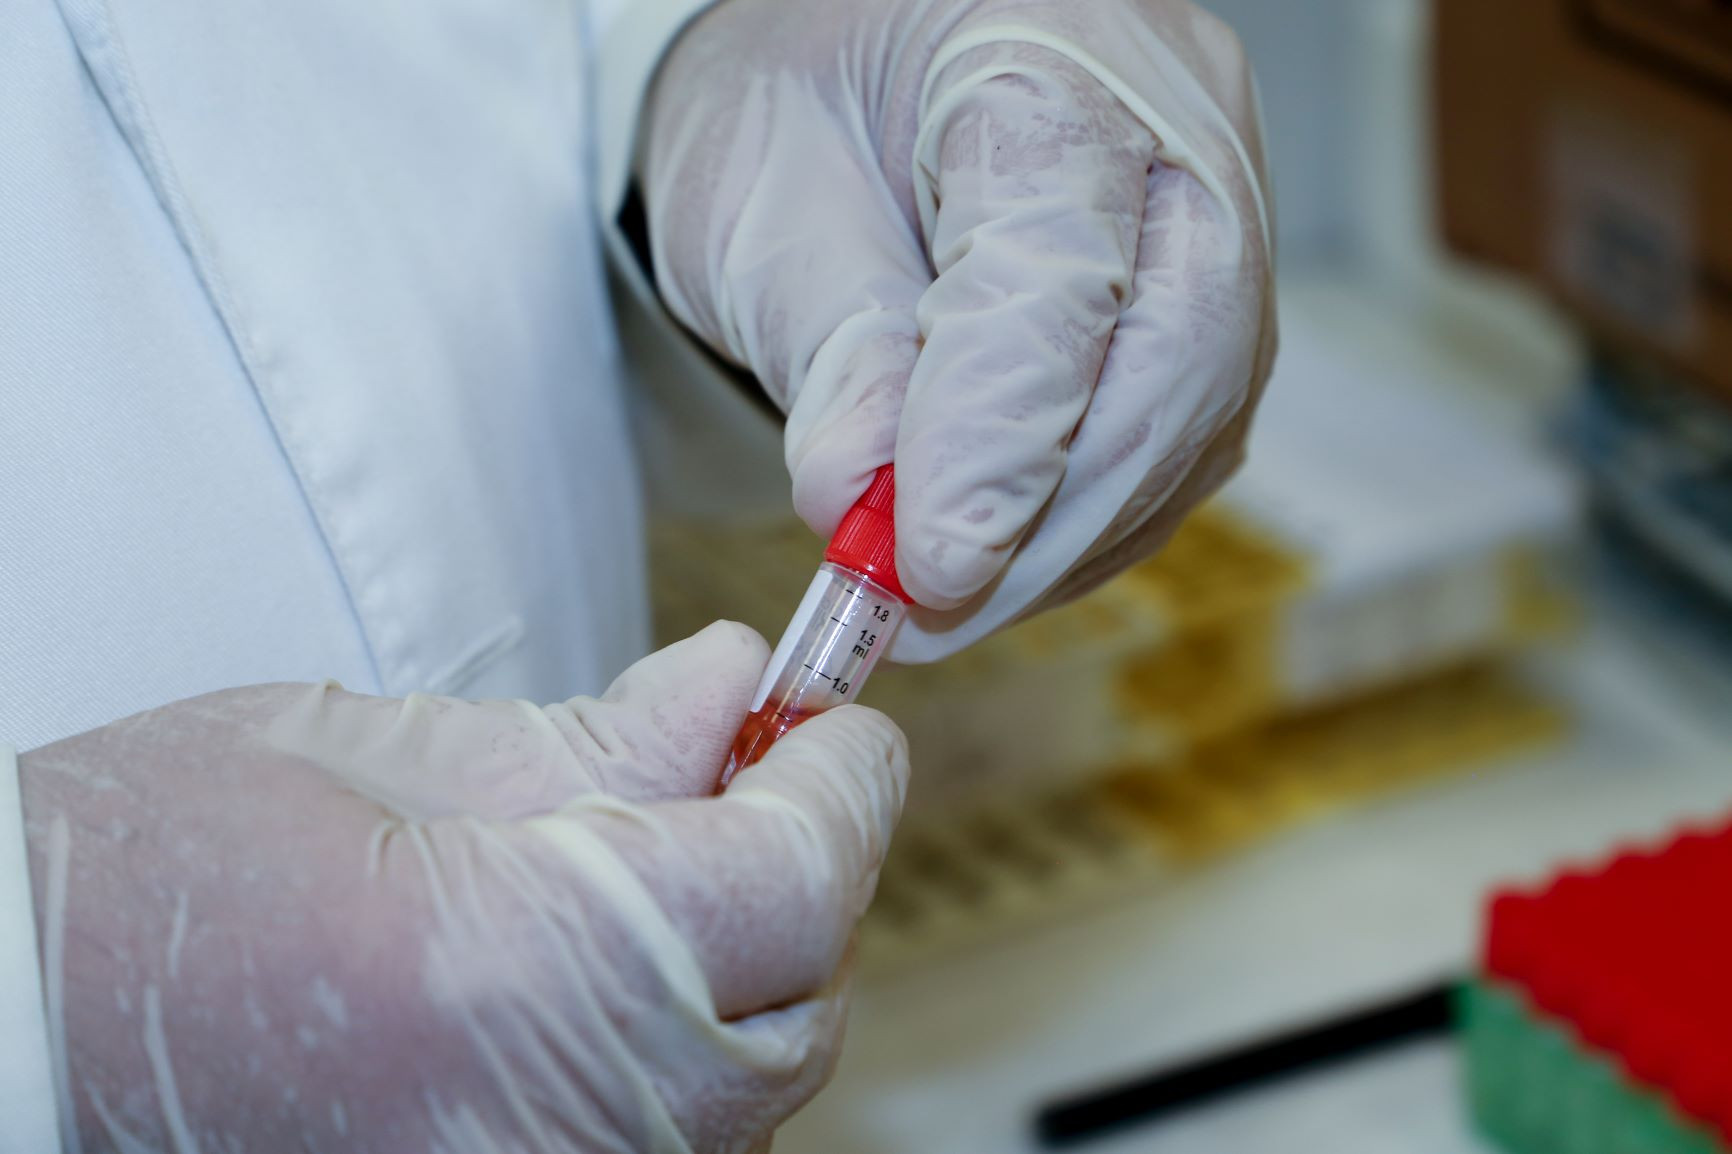 Σύμβαση εργασίας απαιτεί λήψη δειγμάτων σάλιου και αίματος